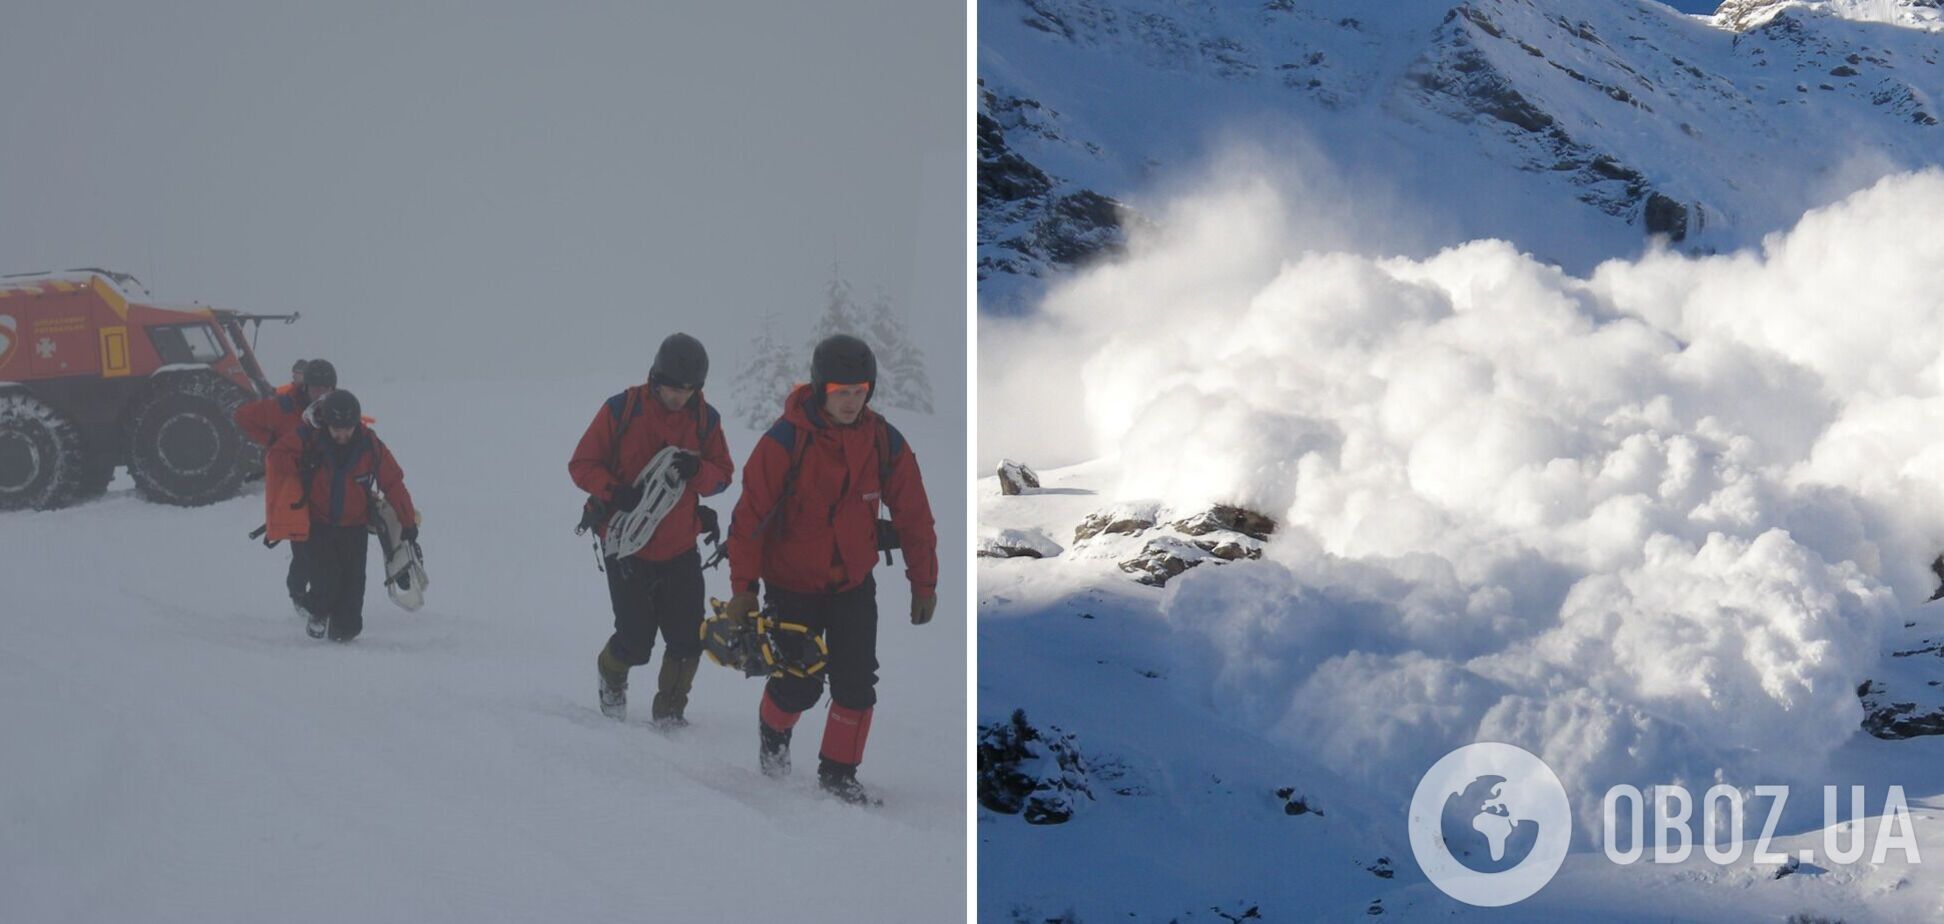 На Закарпатті снігова лавина накрила групу туристів. Фото та деталі НП